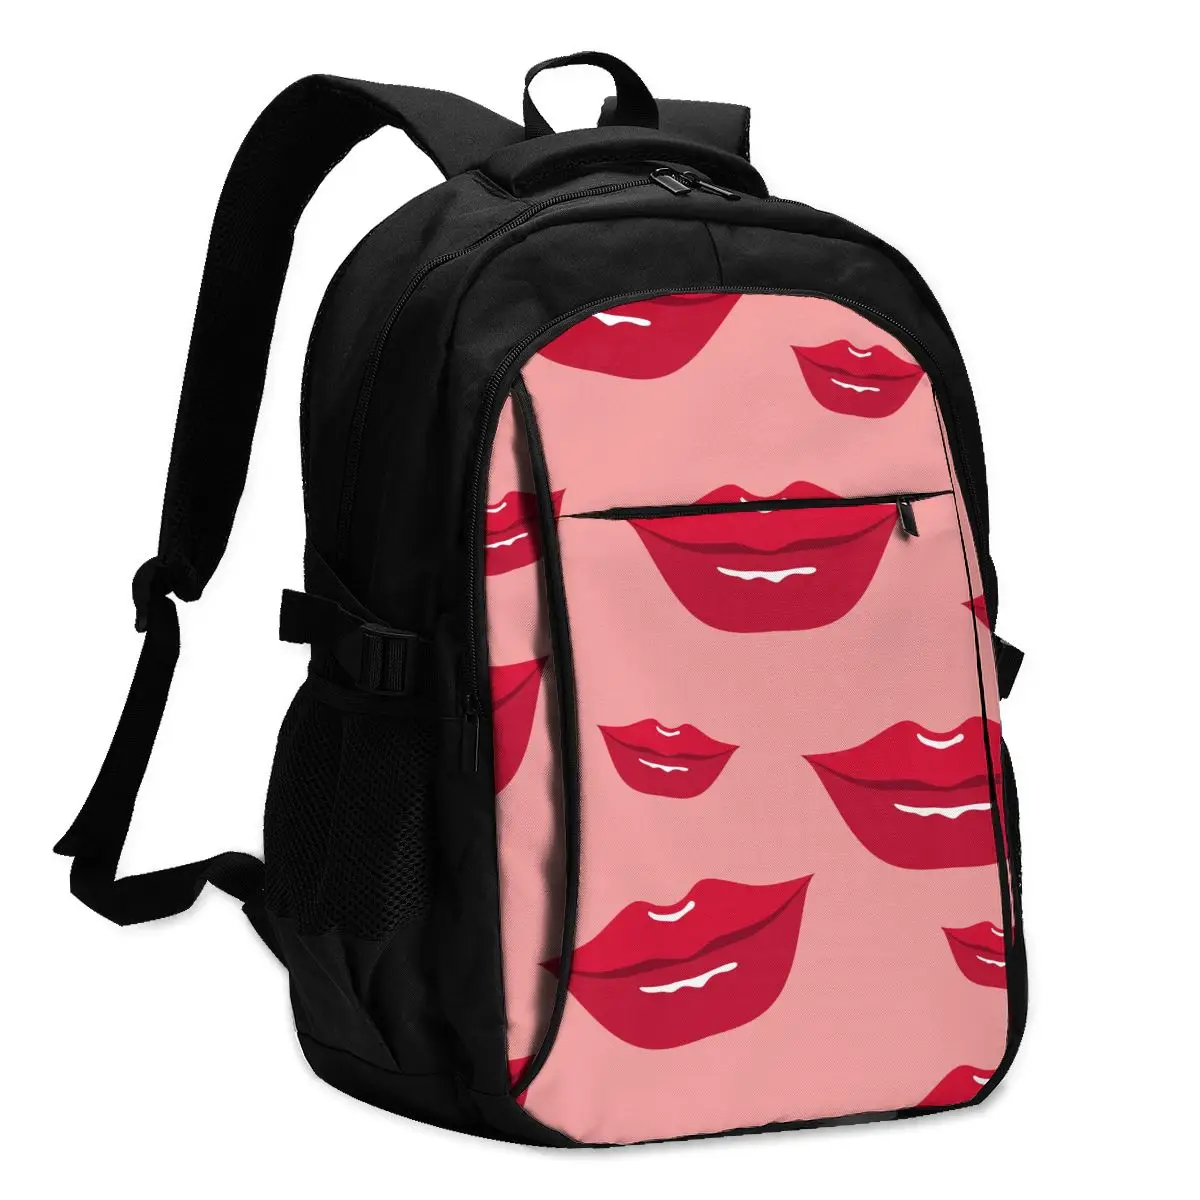 

2021 Прохладный печати ноутбук рюкзак в виде красных губ, зарядка через USB путешествия Для женщин Мужской школьная сумка Mochila